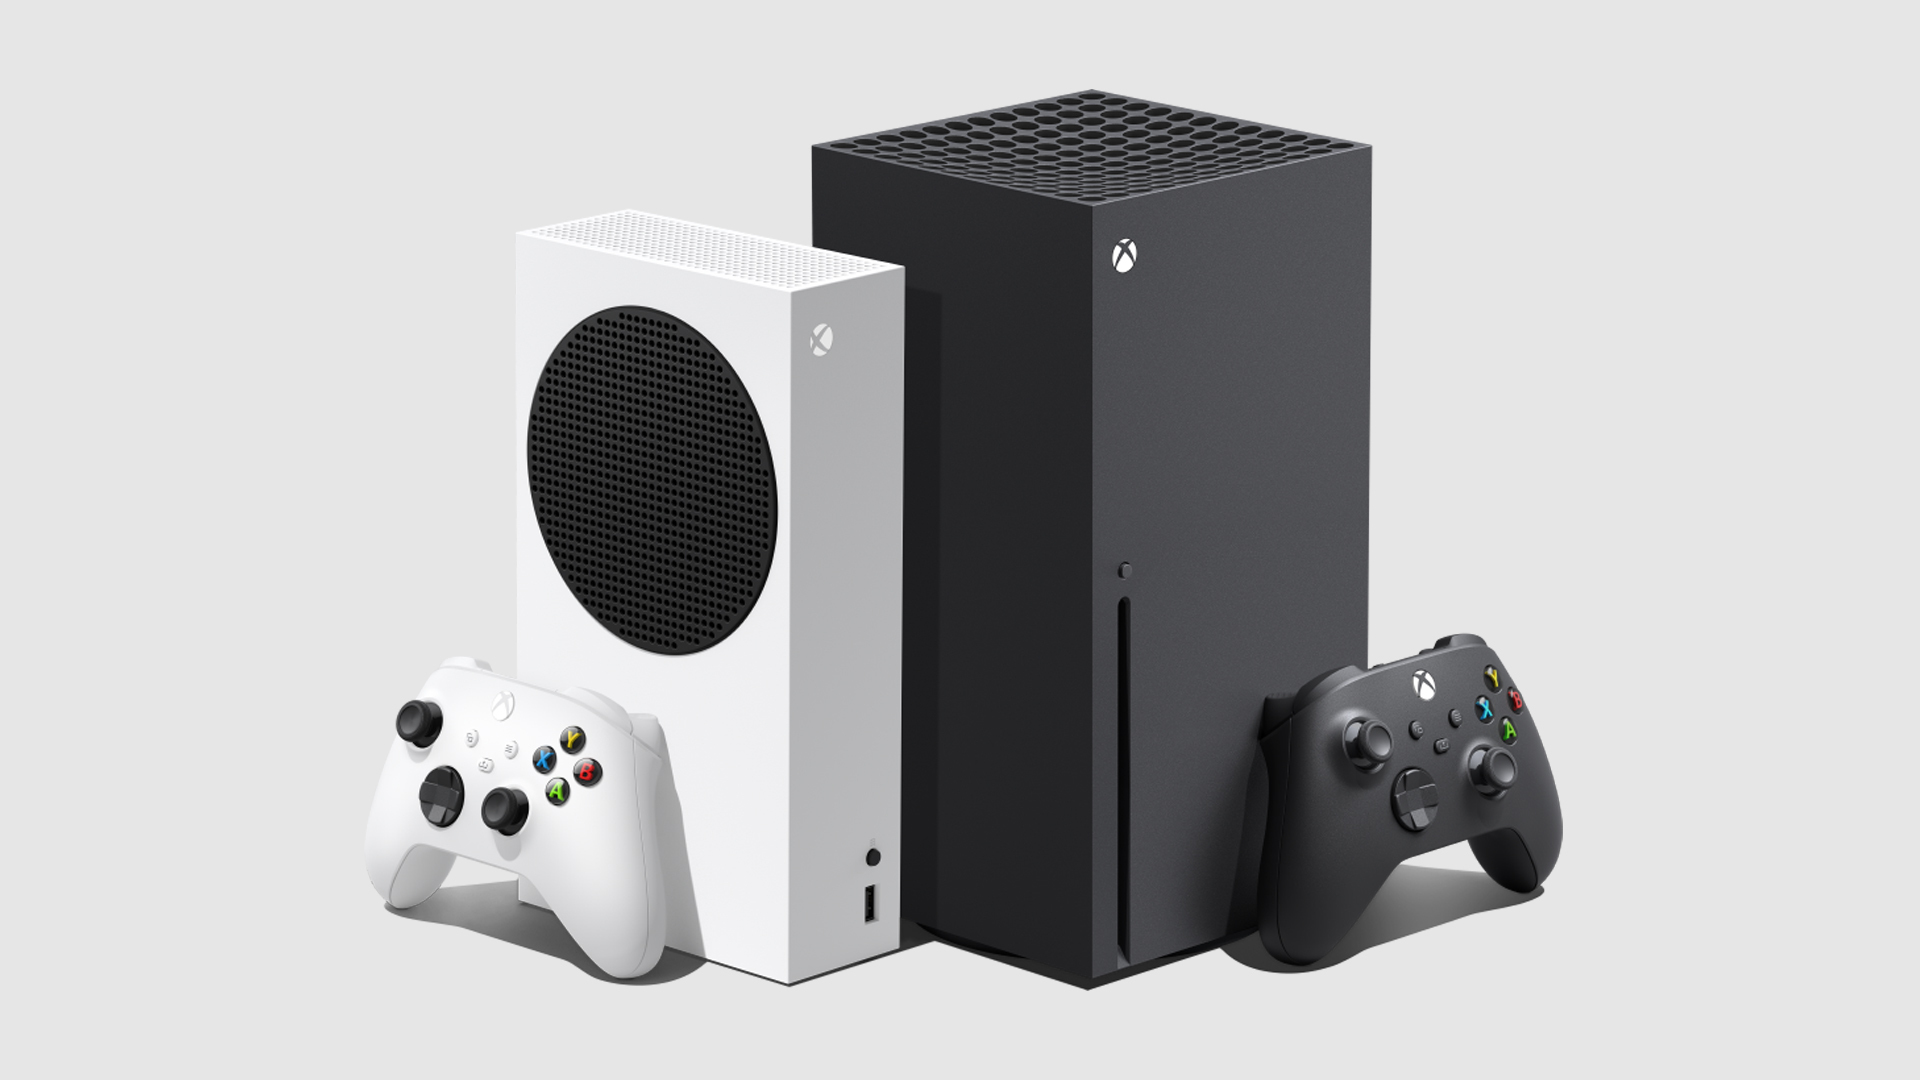 Rykter: Nytt Xbox-utviklingssett er evaluert for bruk i Sør-Korea